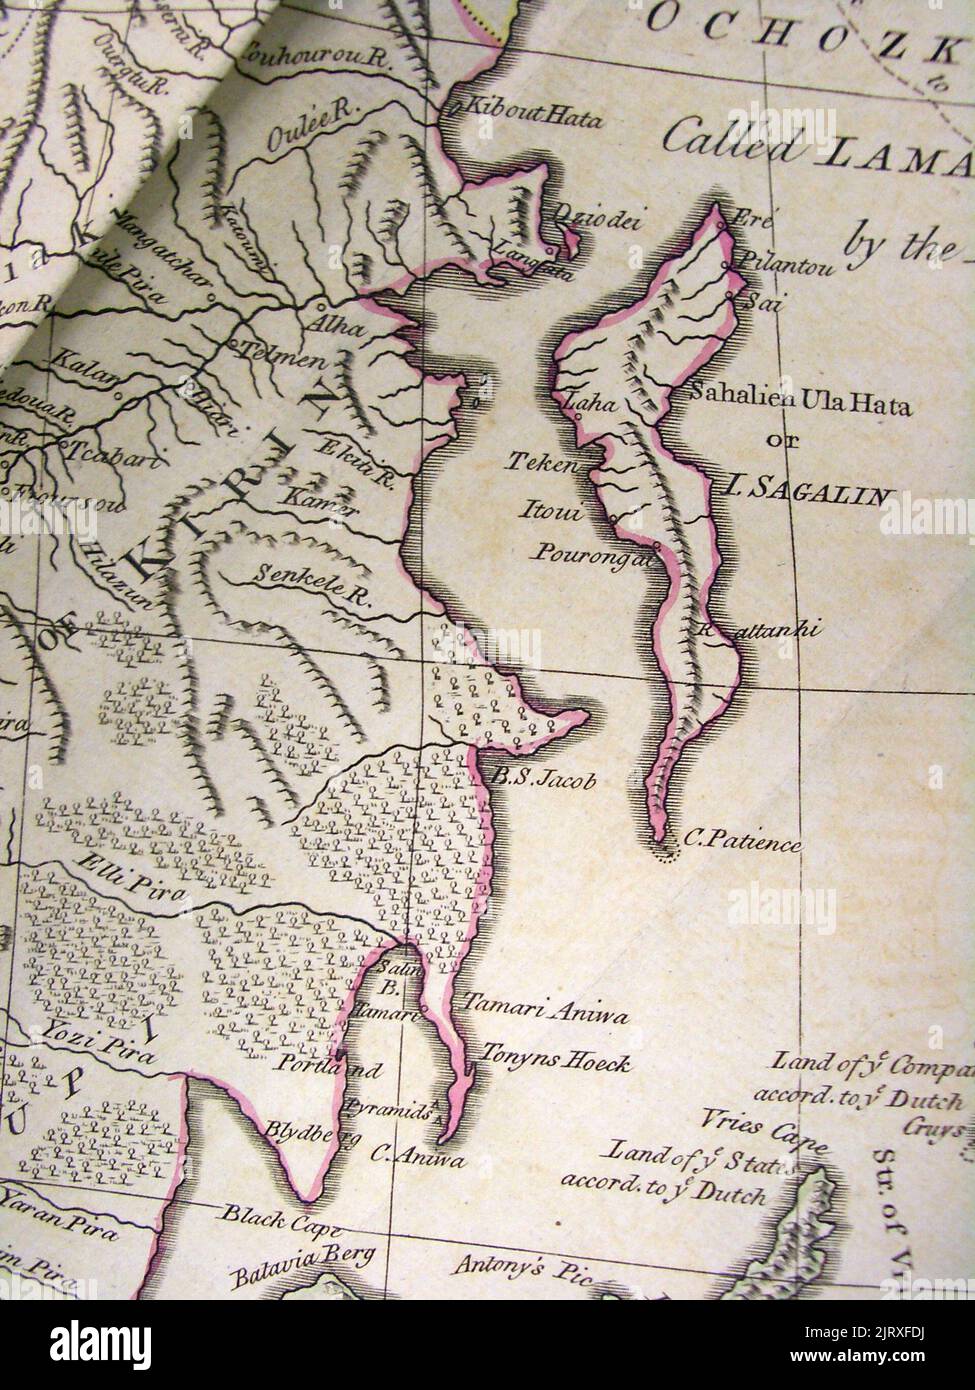 Un fragment de la carte de l'Empire russe, dit être basé sur l'oeuvre d'Anville, dans l'Atlas de Thomas kithen décrivant l'Univers entier. Sakhalin est appelé 'Sahalien Ula Hata ou I. Sagalin - Île Sakhalin, 1773 Banque D'Images